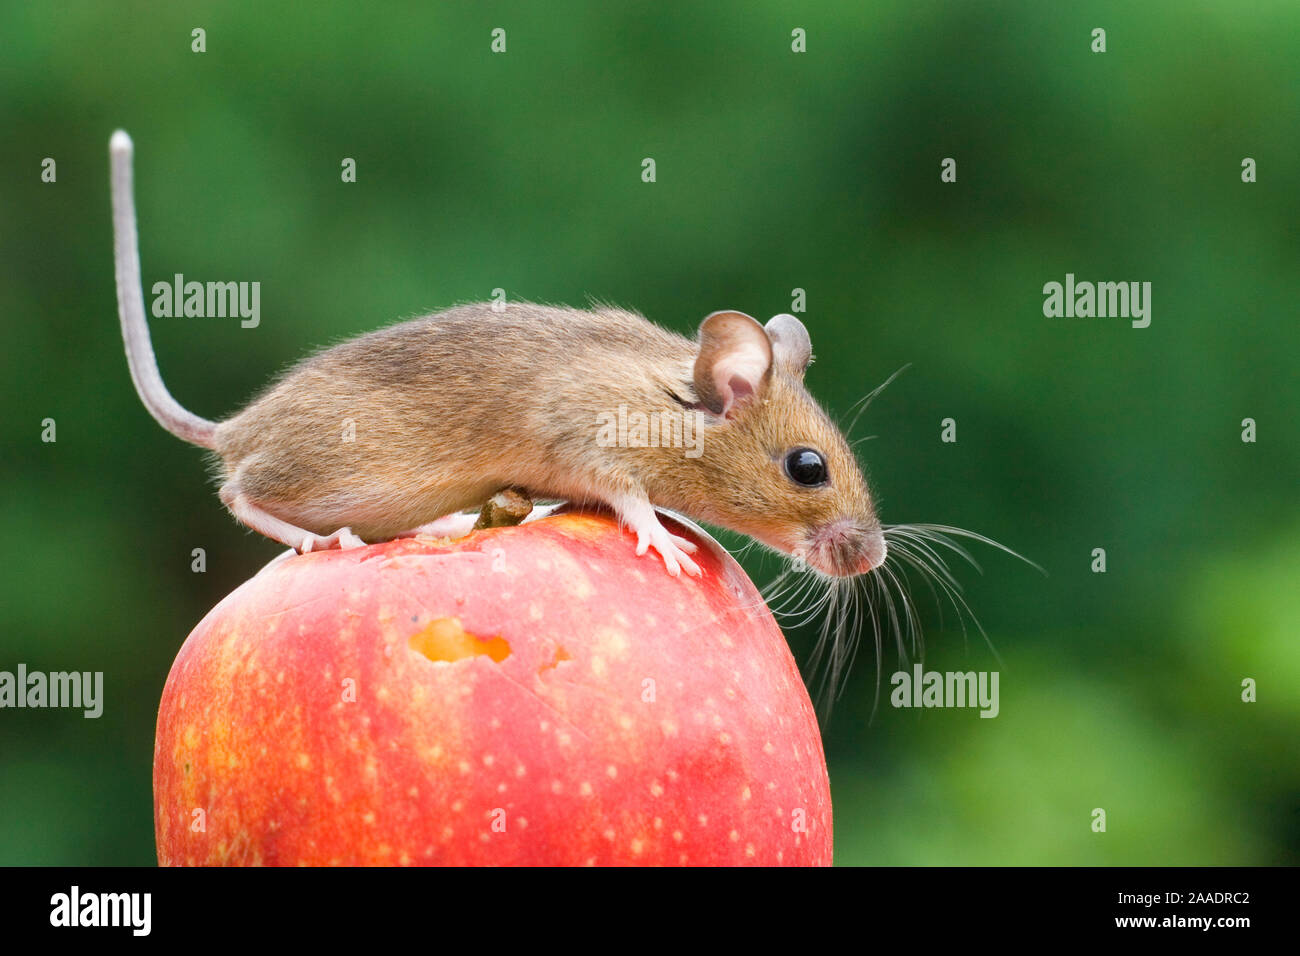 Maus auf einem Apfel, captive Stock Photo